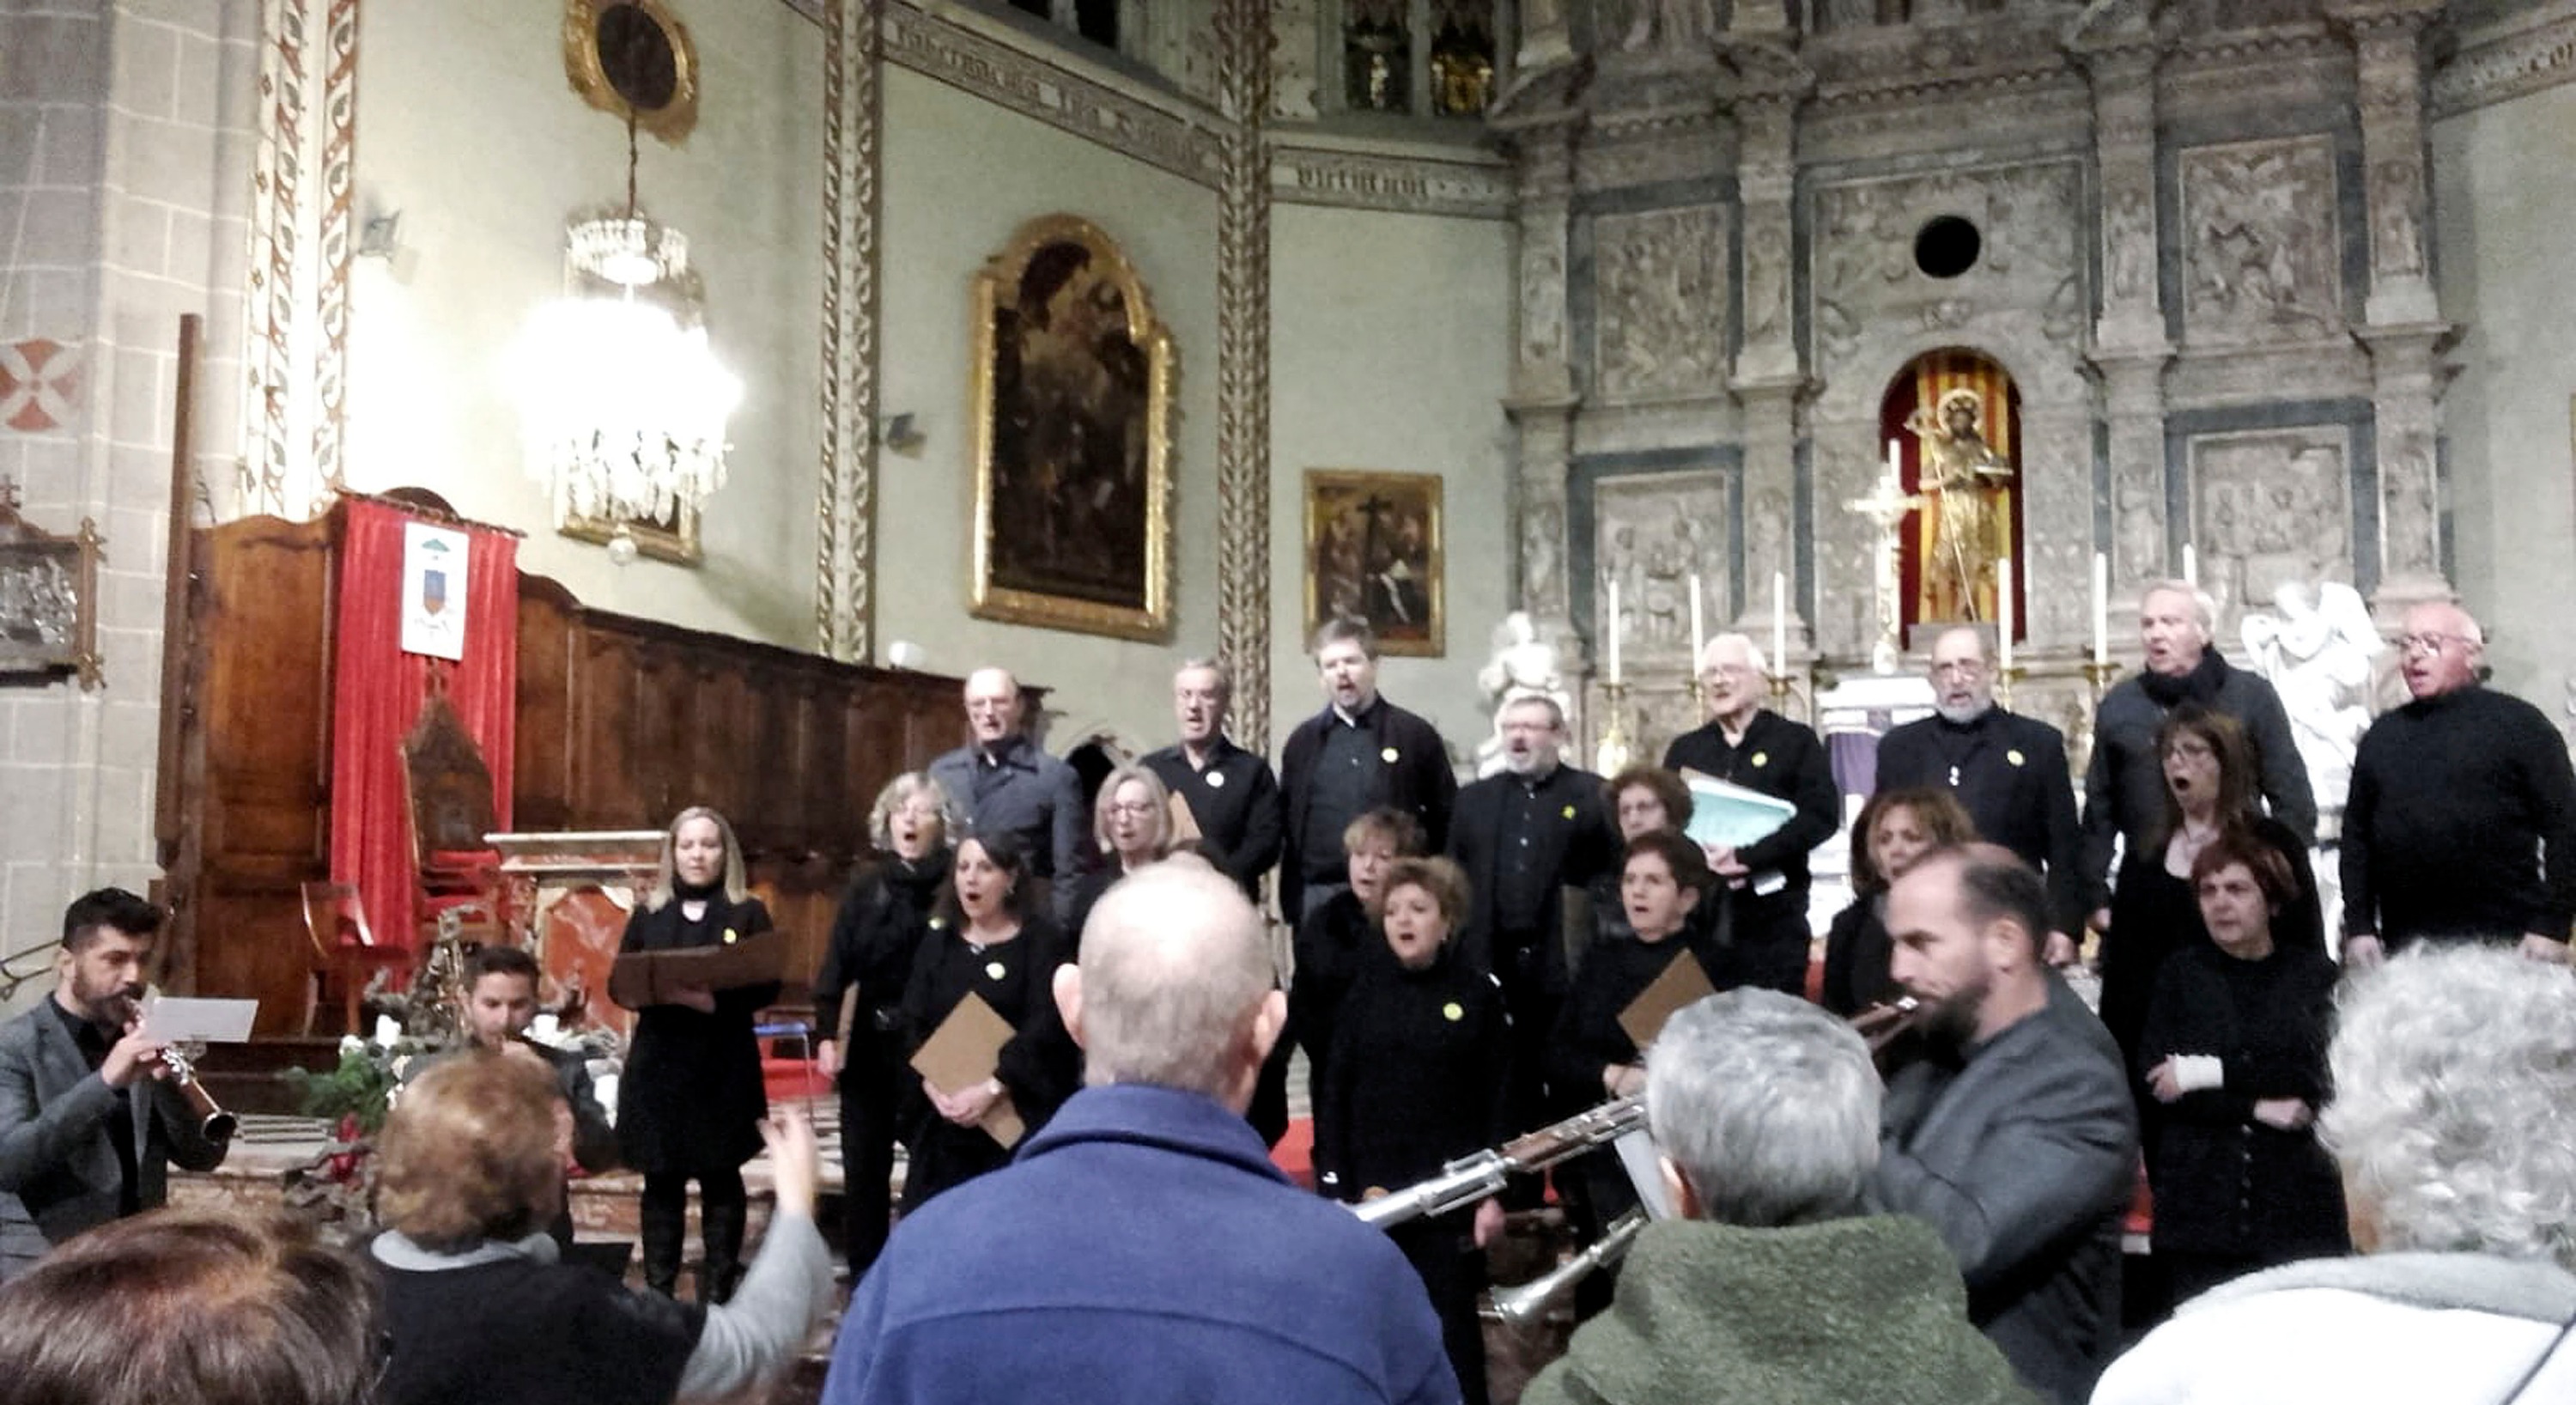 La formació ripollesa, que acaba de celebrar el 125è aniversari, va oferir una part del concert en solitari, sota la direcció de Teresina Maideu